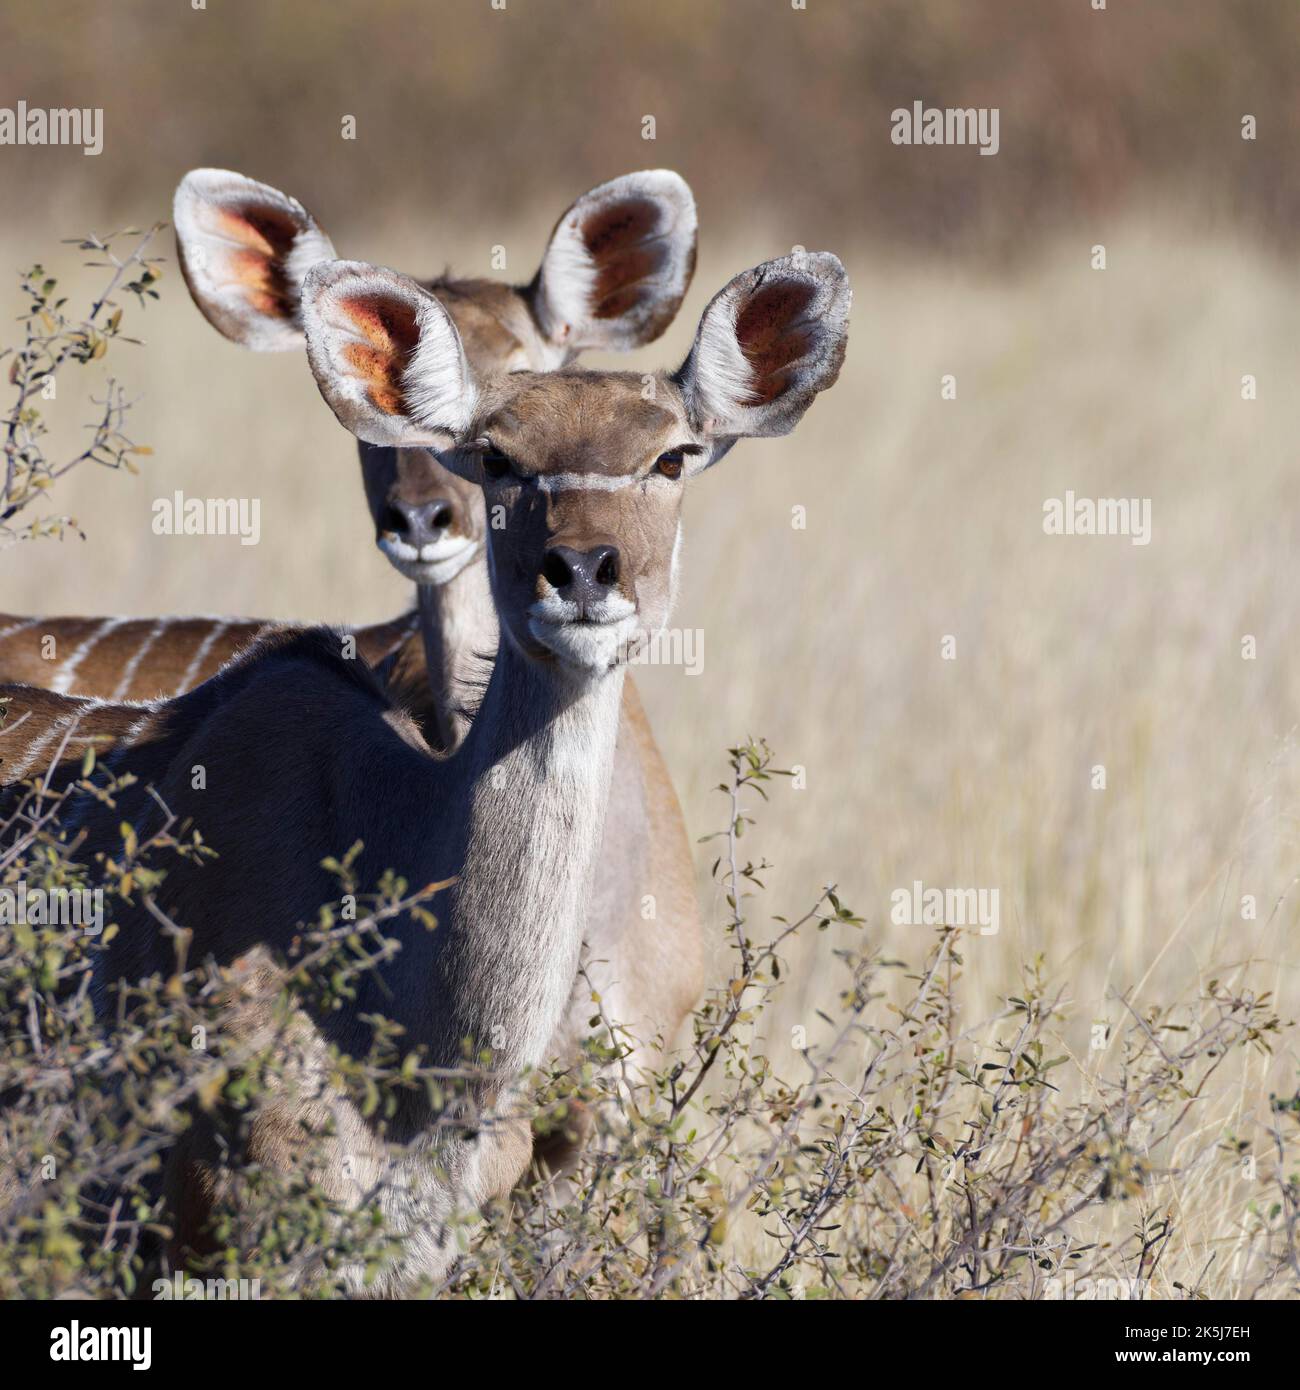 Großer Kudus (Tragelaphus strepsiceros), zwei Erwachsene Weibchen, die zwischen den Sträuchern stehen, Augenkontakt, Tierportrait, Savanne, Mahango-Kerngebiet, Bwabw Stockfoto